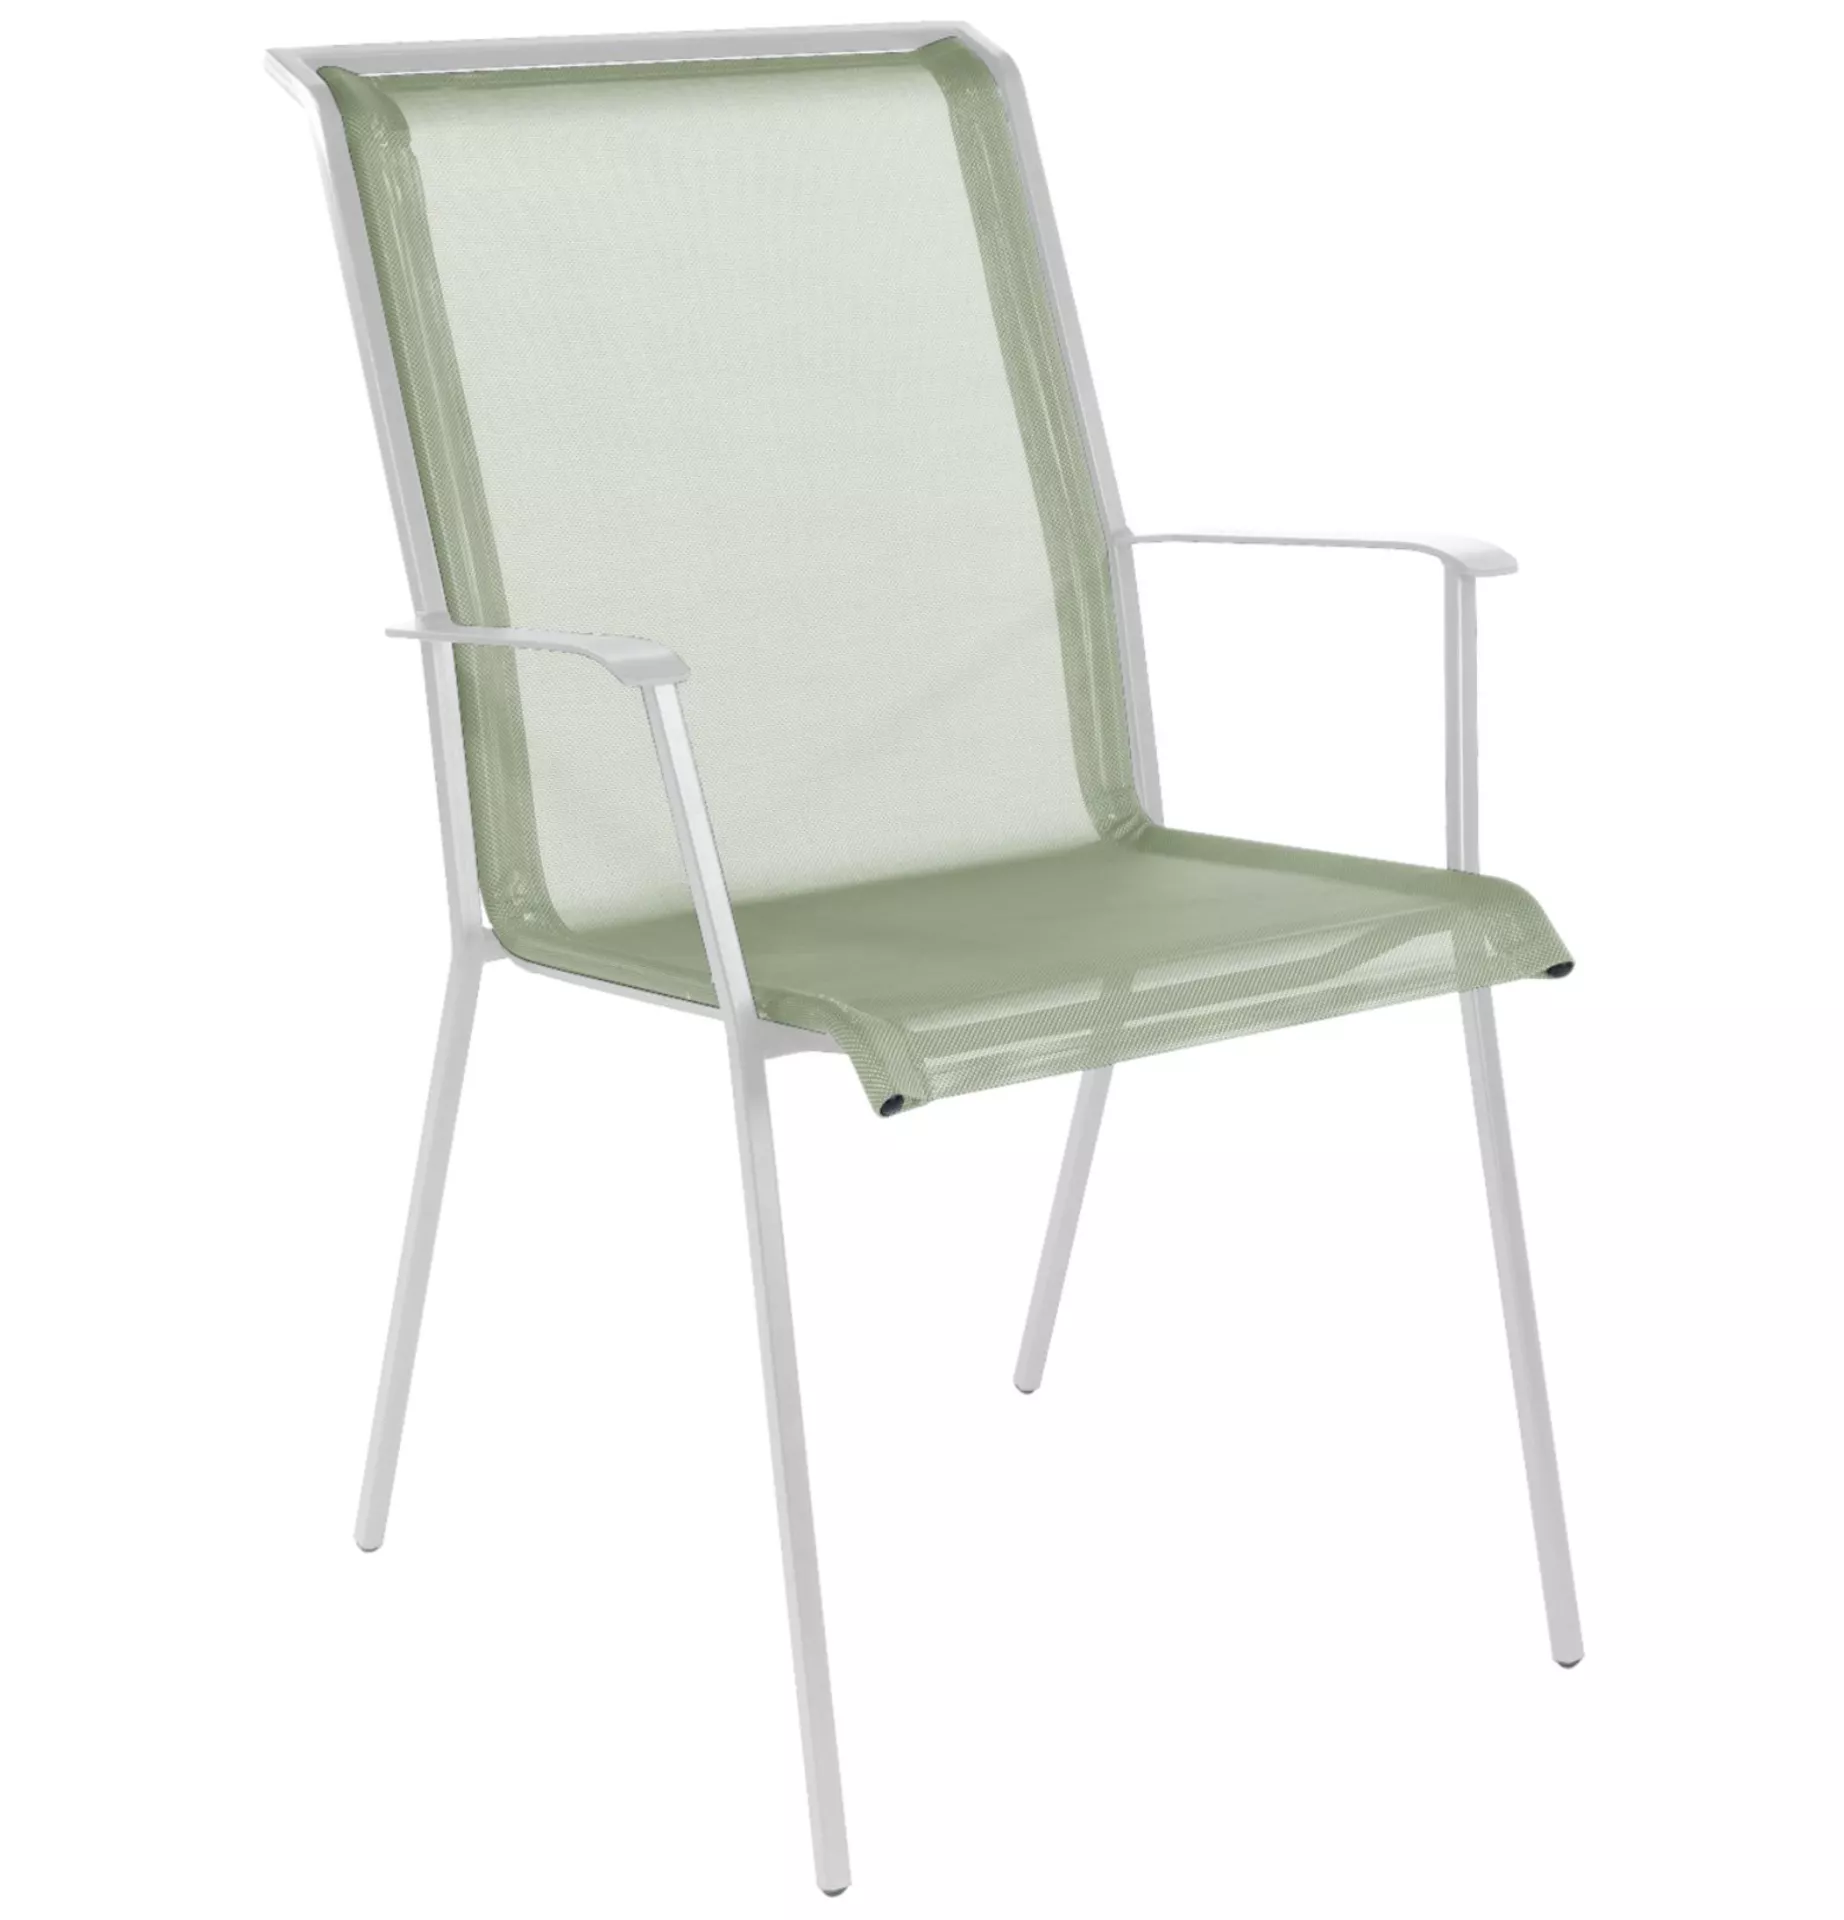 Matten-Sessel Chur Schaffner / Farbe: Cremegrün